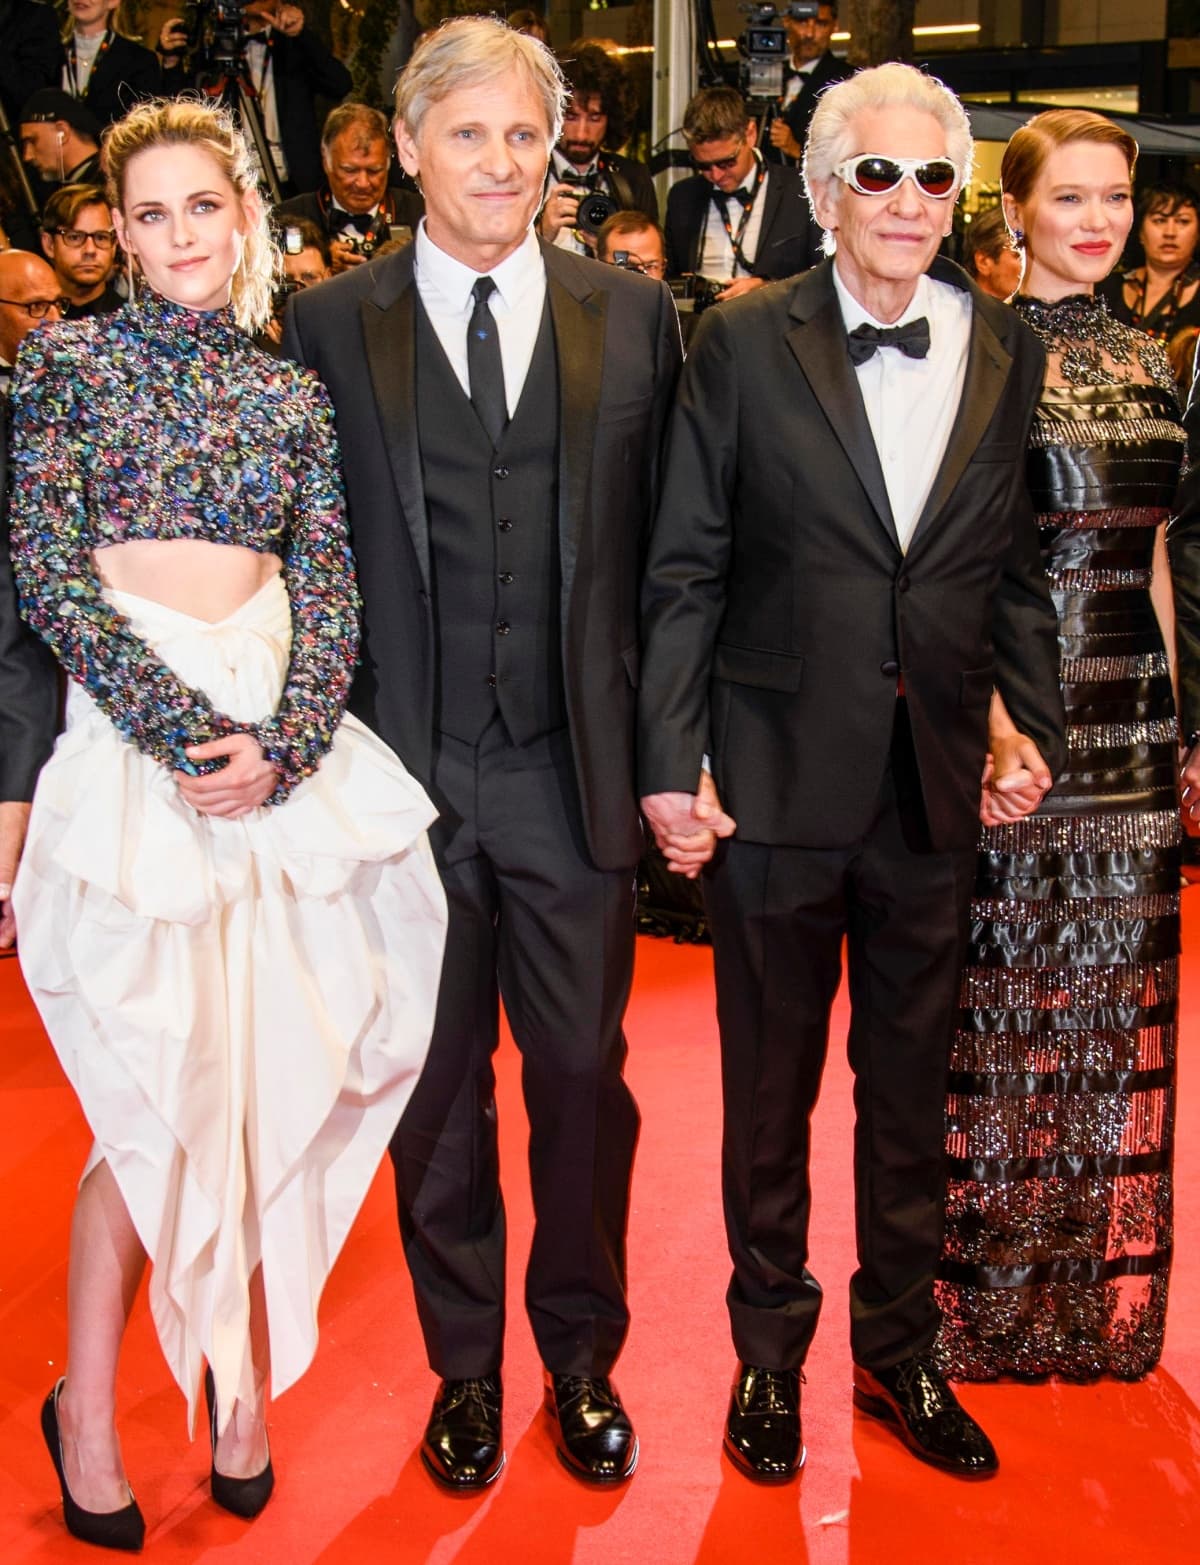 Kristen Stewart, Viggo Mortensen, David Cronenberg, and Léa Seydoux at the "Crimes of the Future" premiere